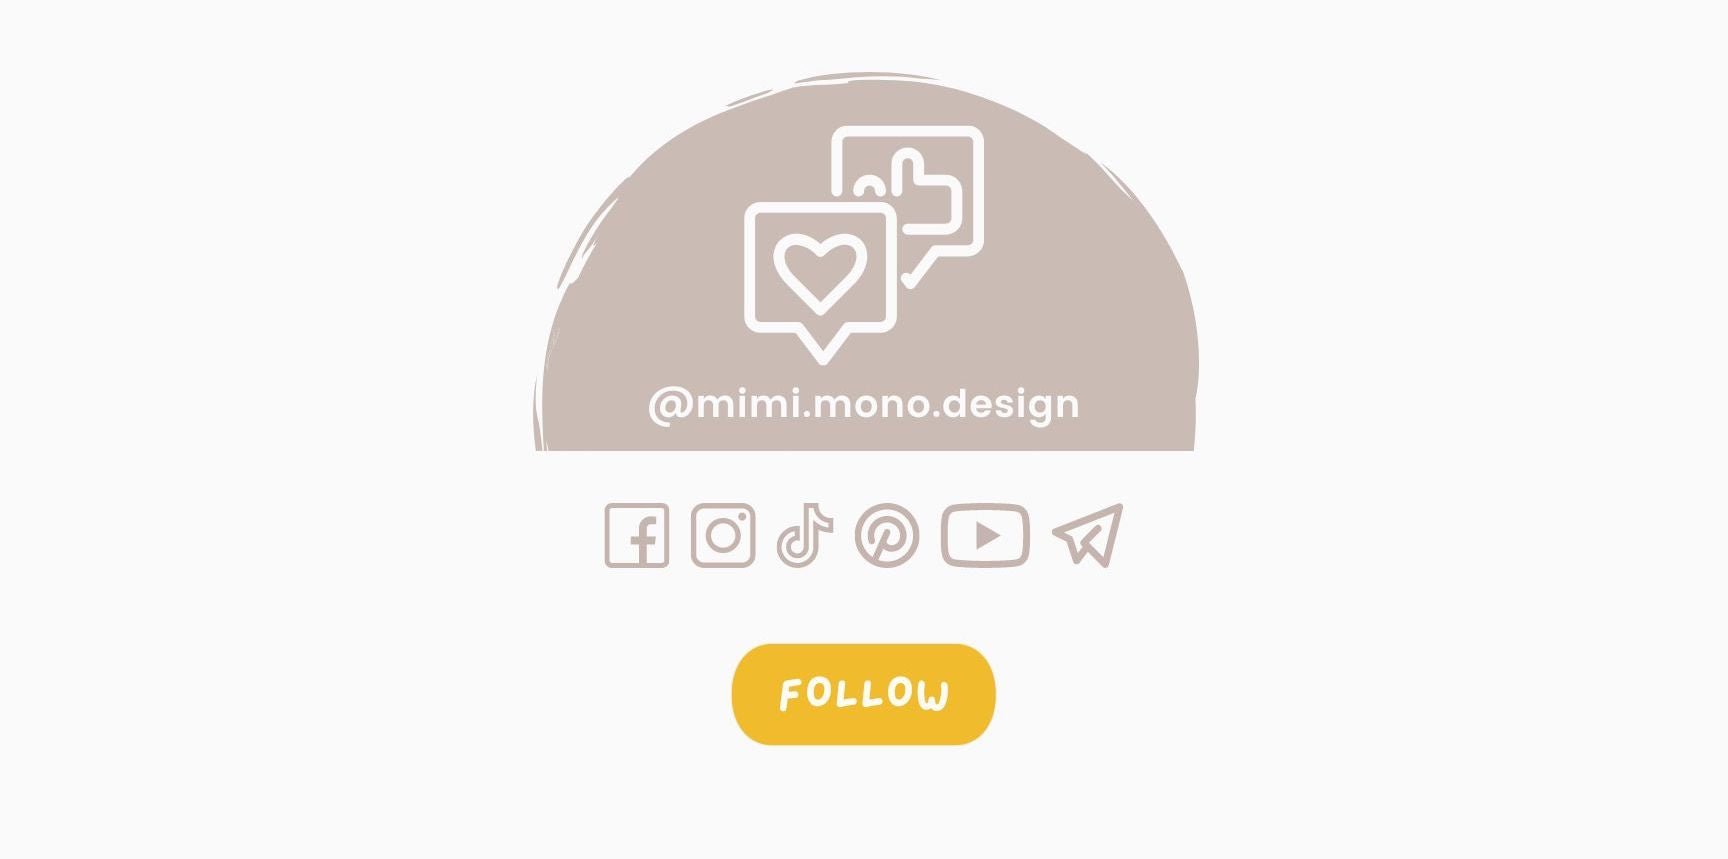 Follow @mimi.mono.design